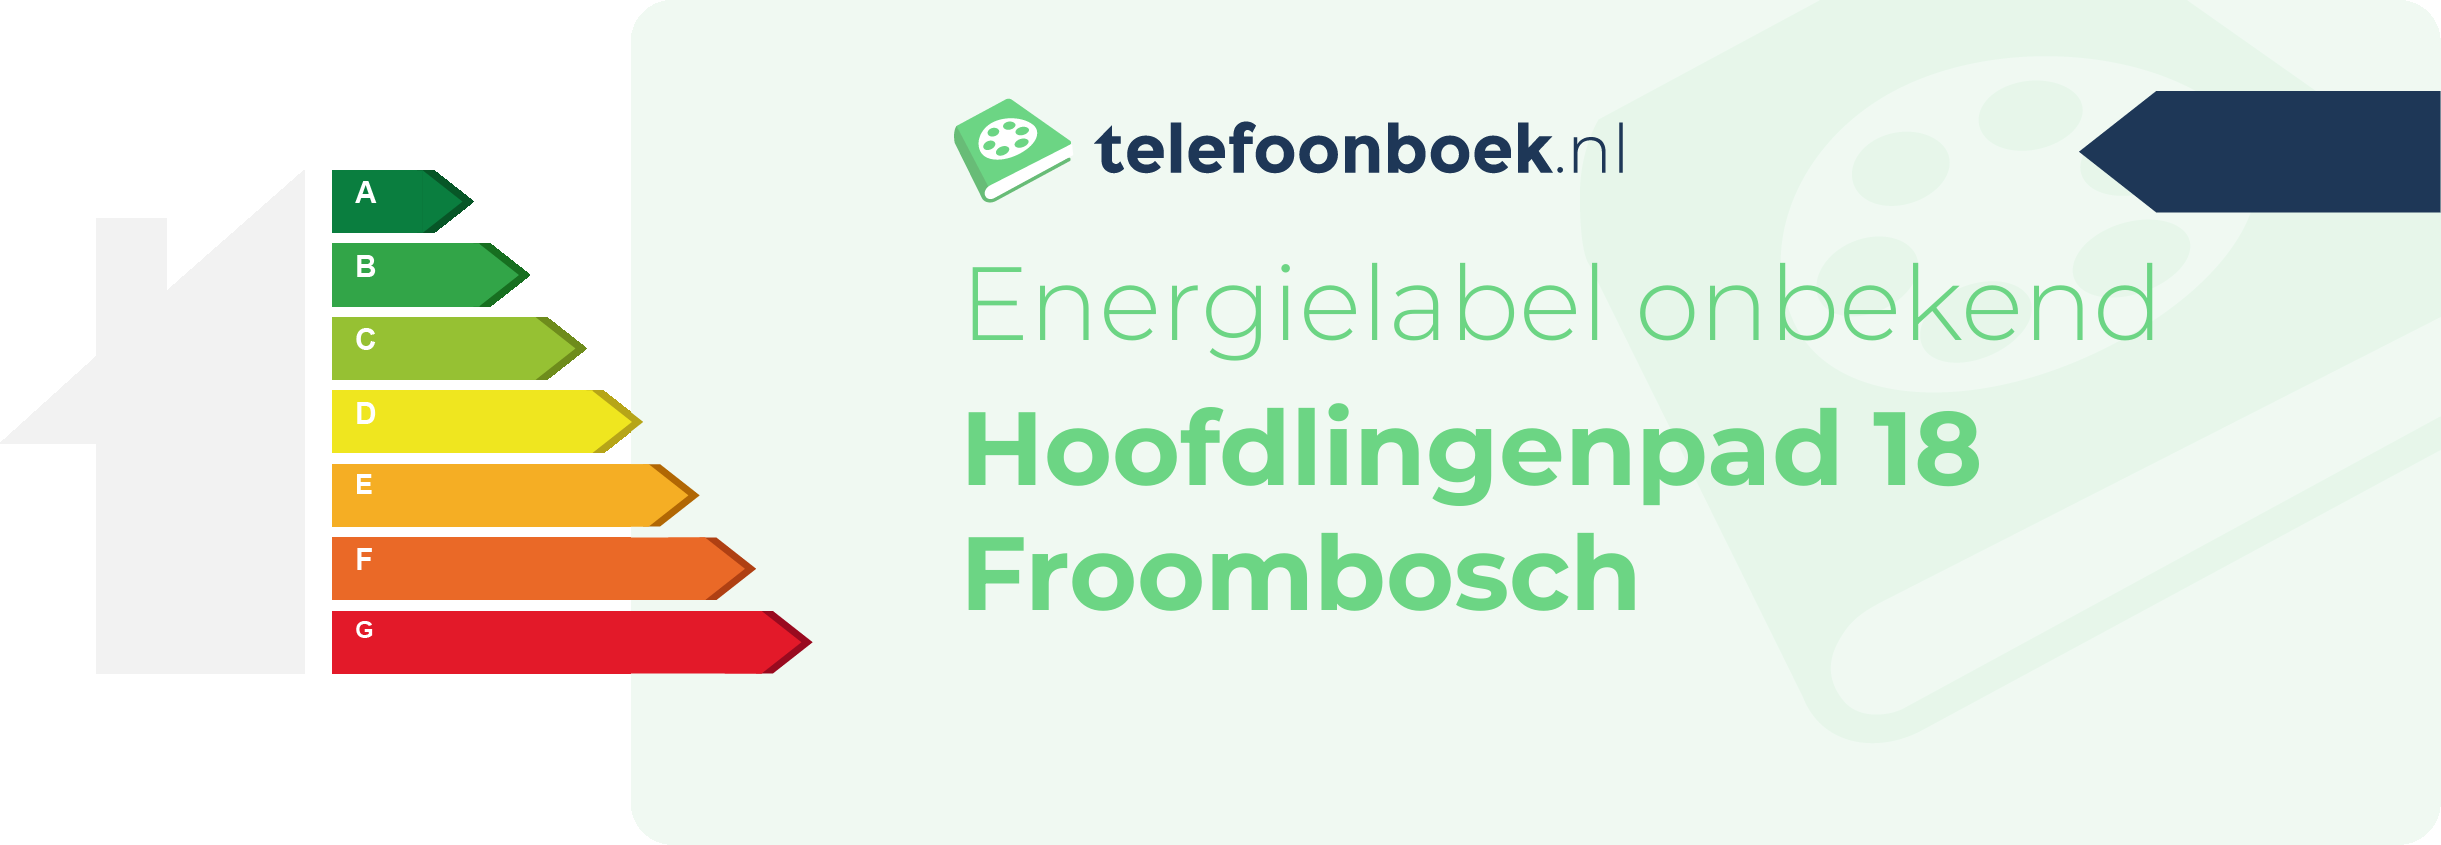 Energielabel Hoofdlingenpad 18 Froombosch